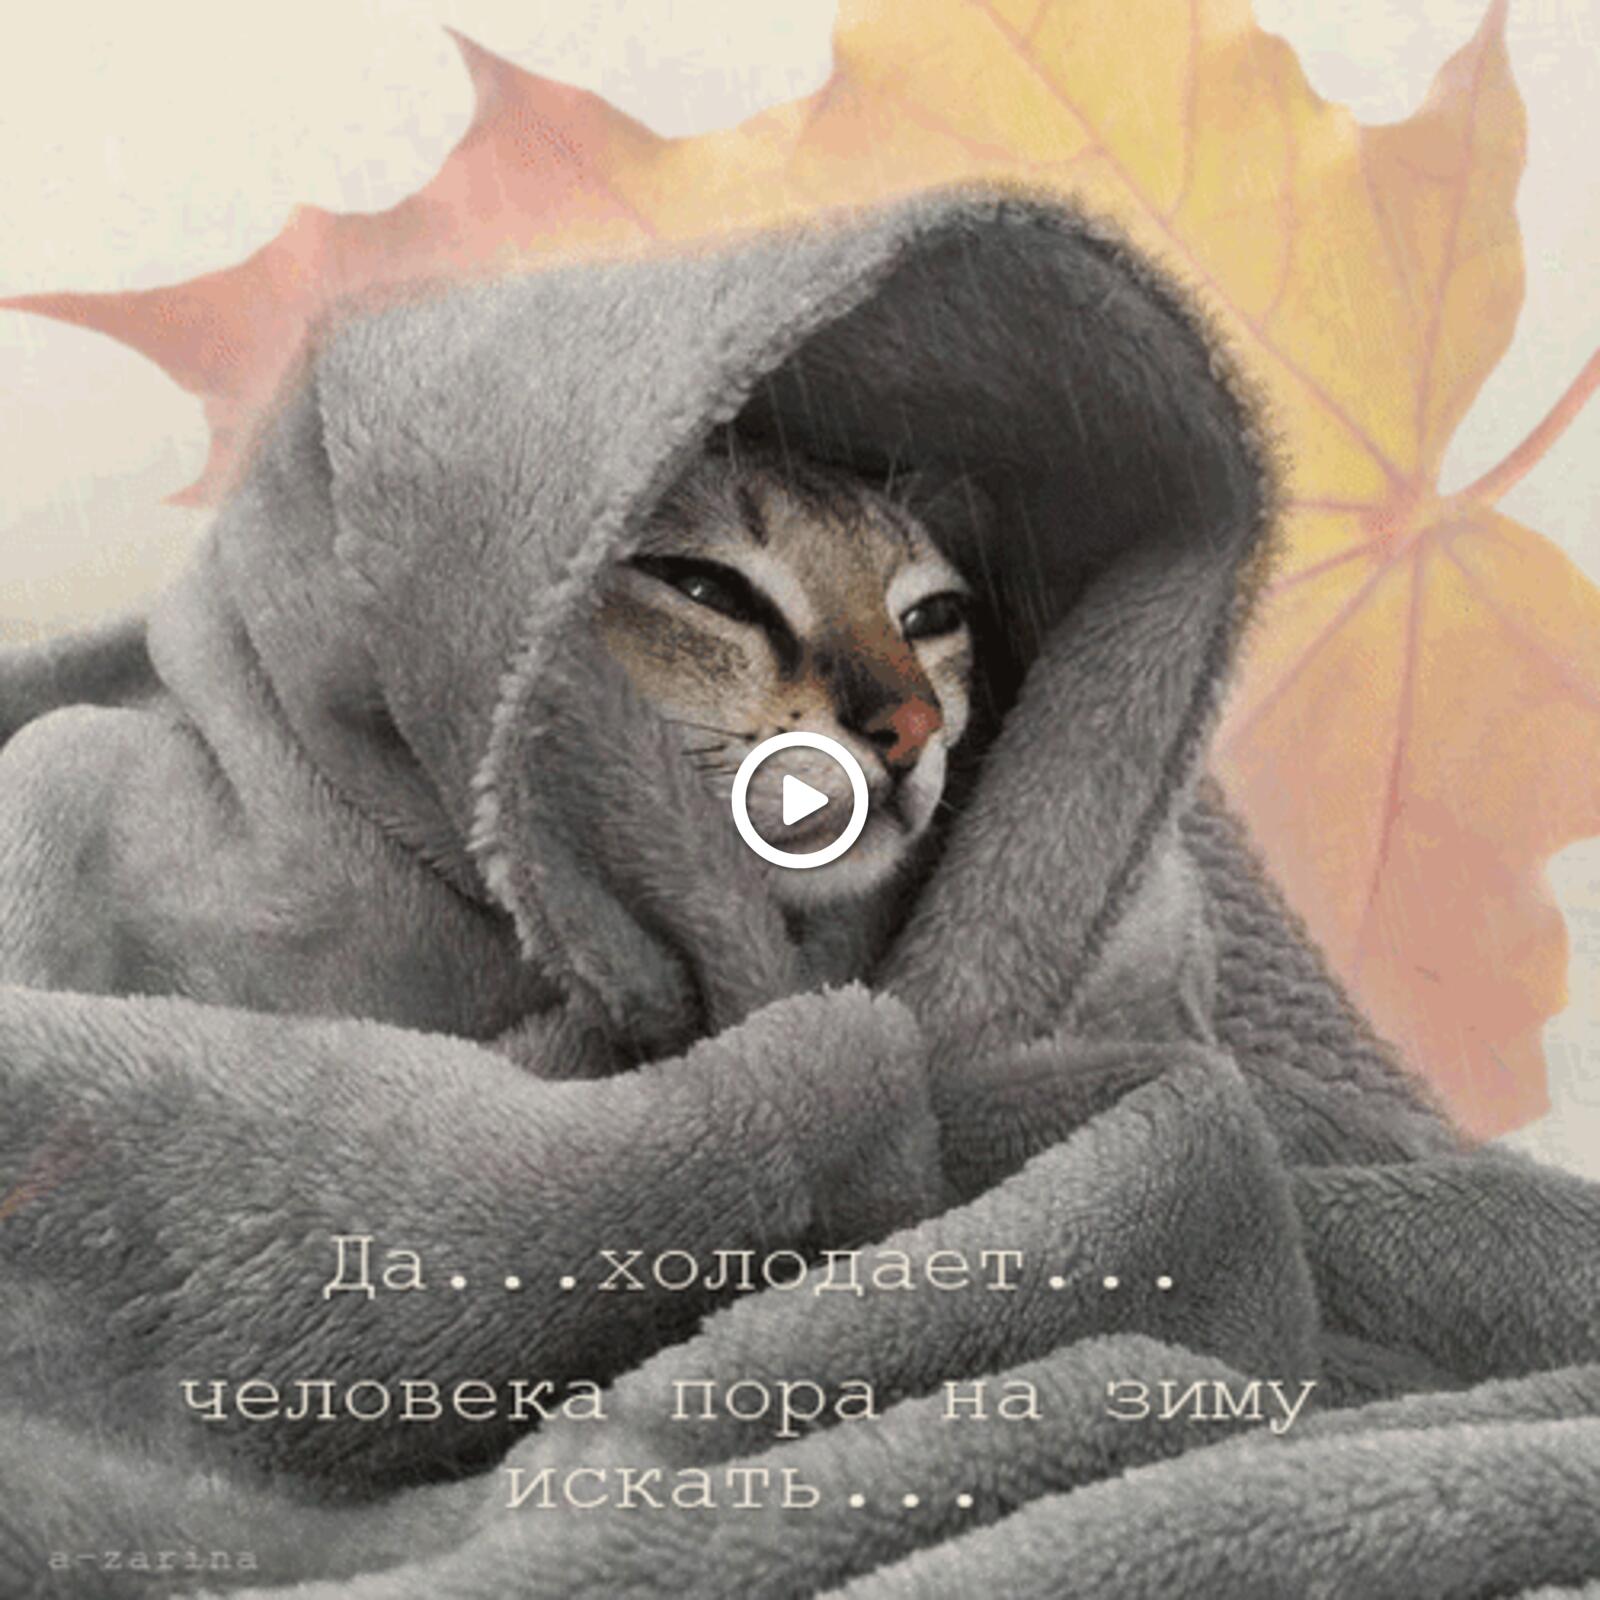 一张以寒冷的 秋叶 动画为主题的明信片